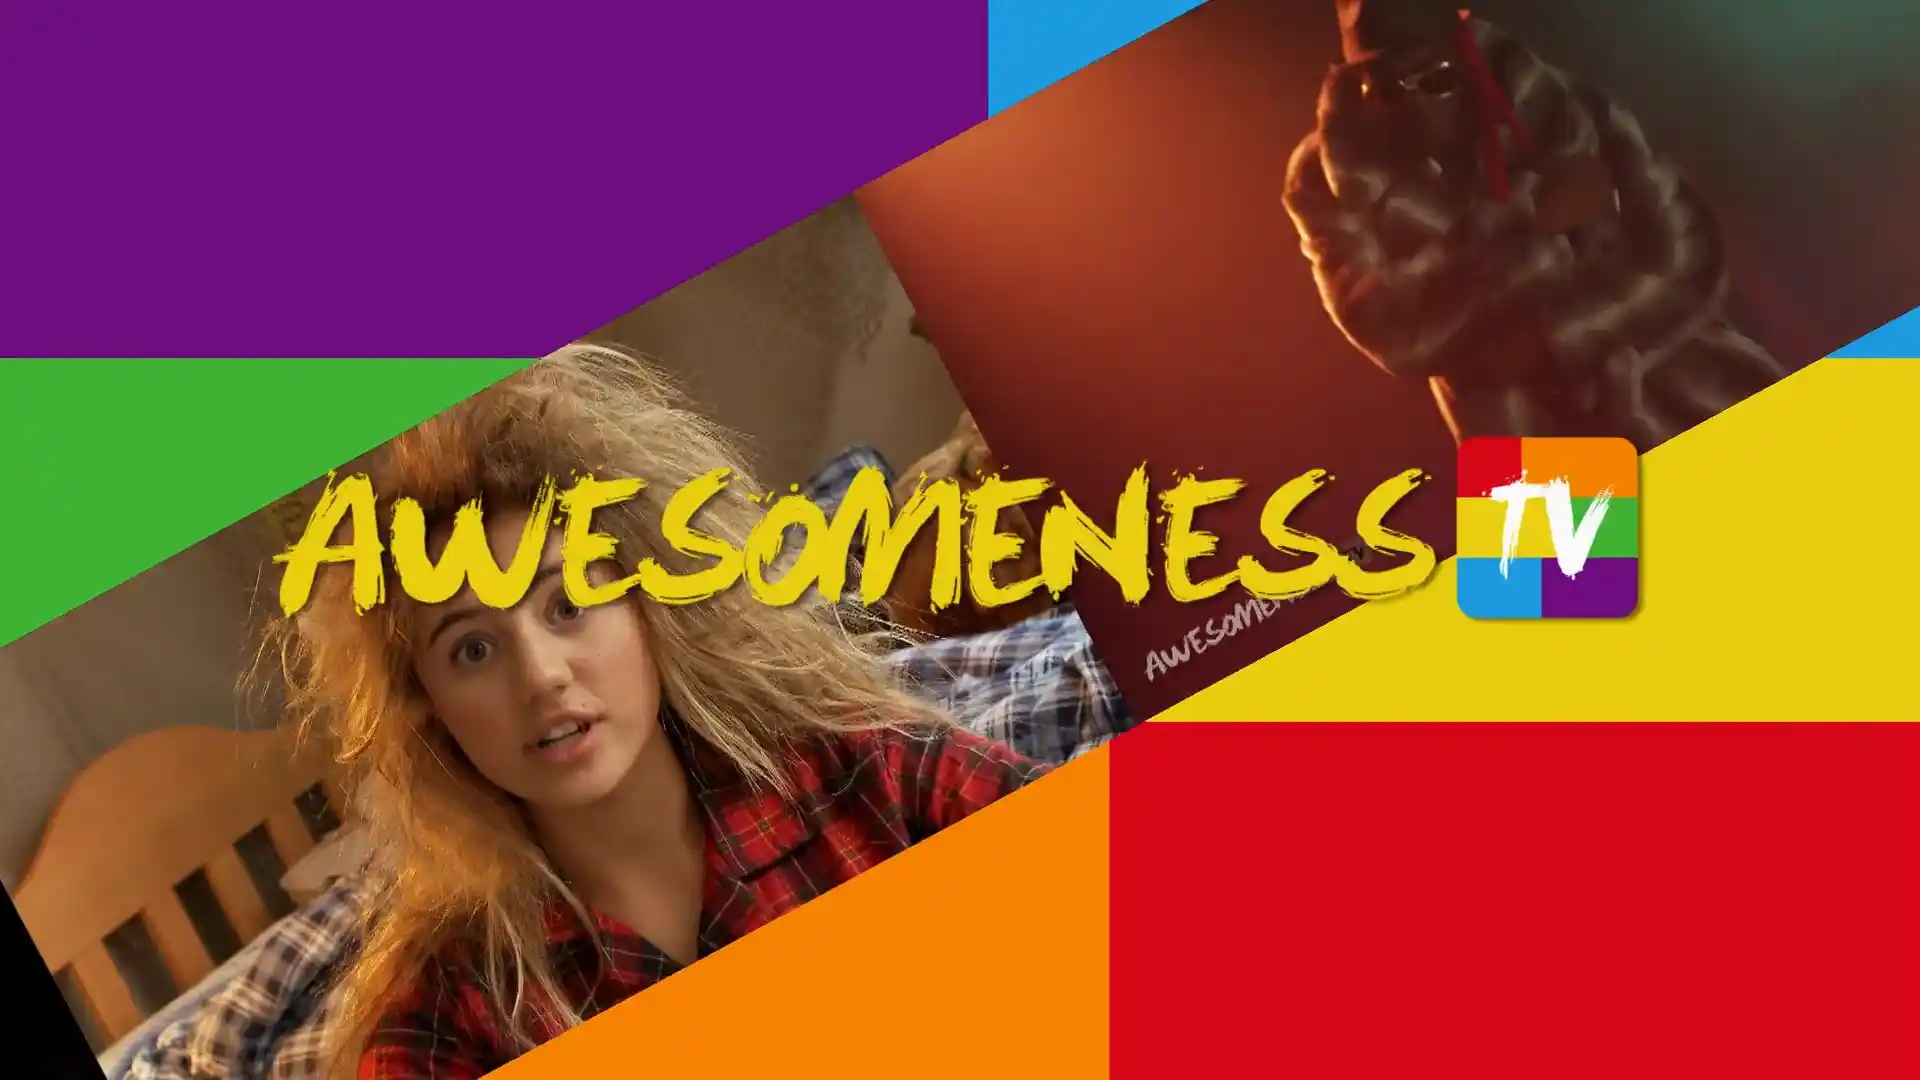  AwesomenessTV is een Amerikaans multichannel netwerk en productiebedrijf dat zich richt op het creëren van content voor tieners en jongvolwassenen. Het bedrijf werd opgericht in 2012 en is sindsdien uitgegroeid tot een van de grootste en meest succesvolle online content creators voor deze doelgroep. Het produceert onder andere webseries, films, muziek 